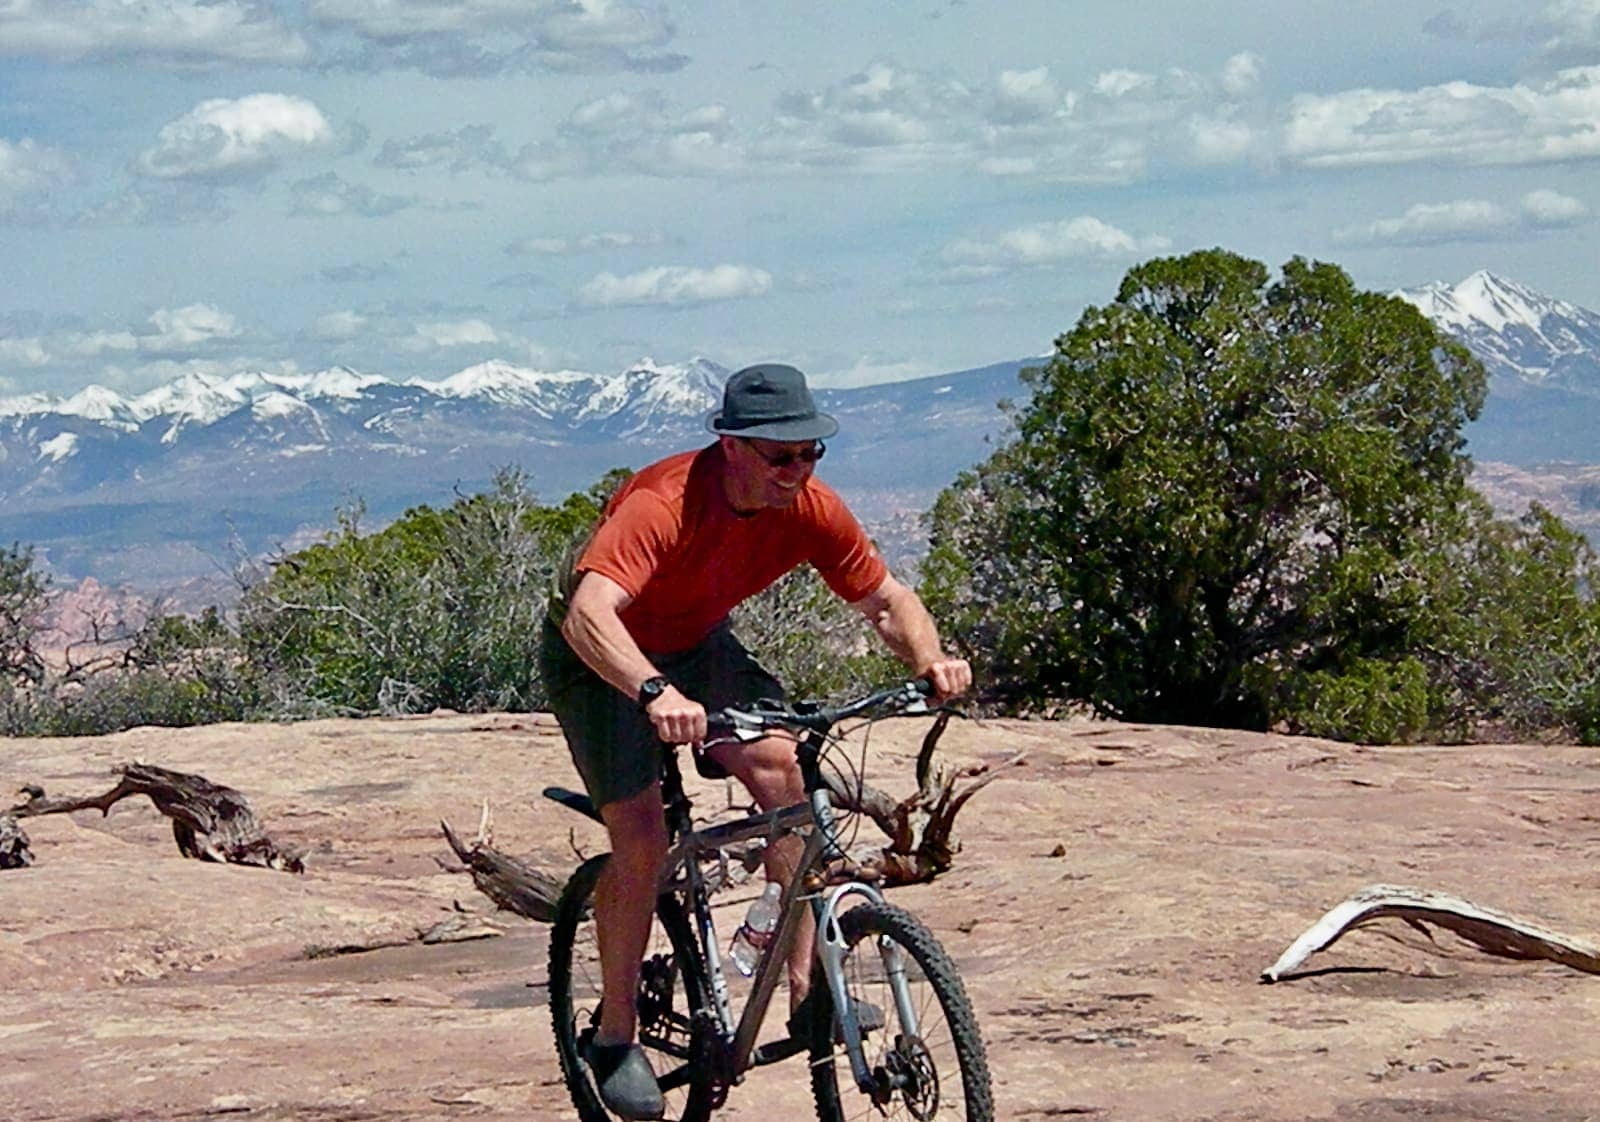 Man in orange shirt riding mountain bike